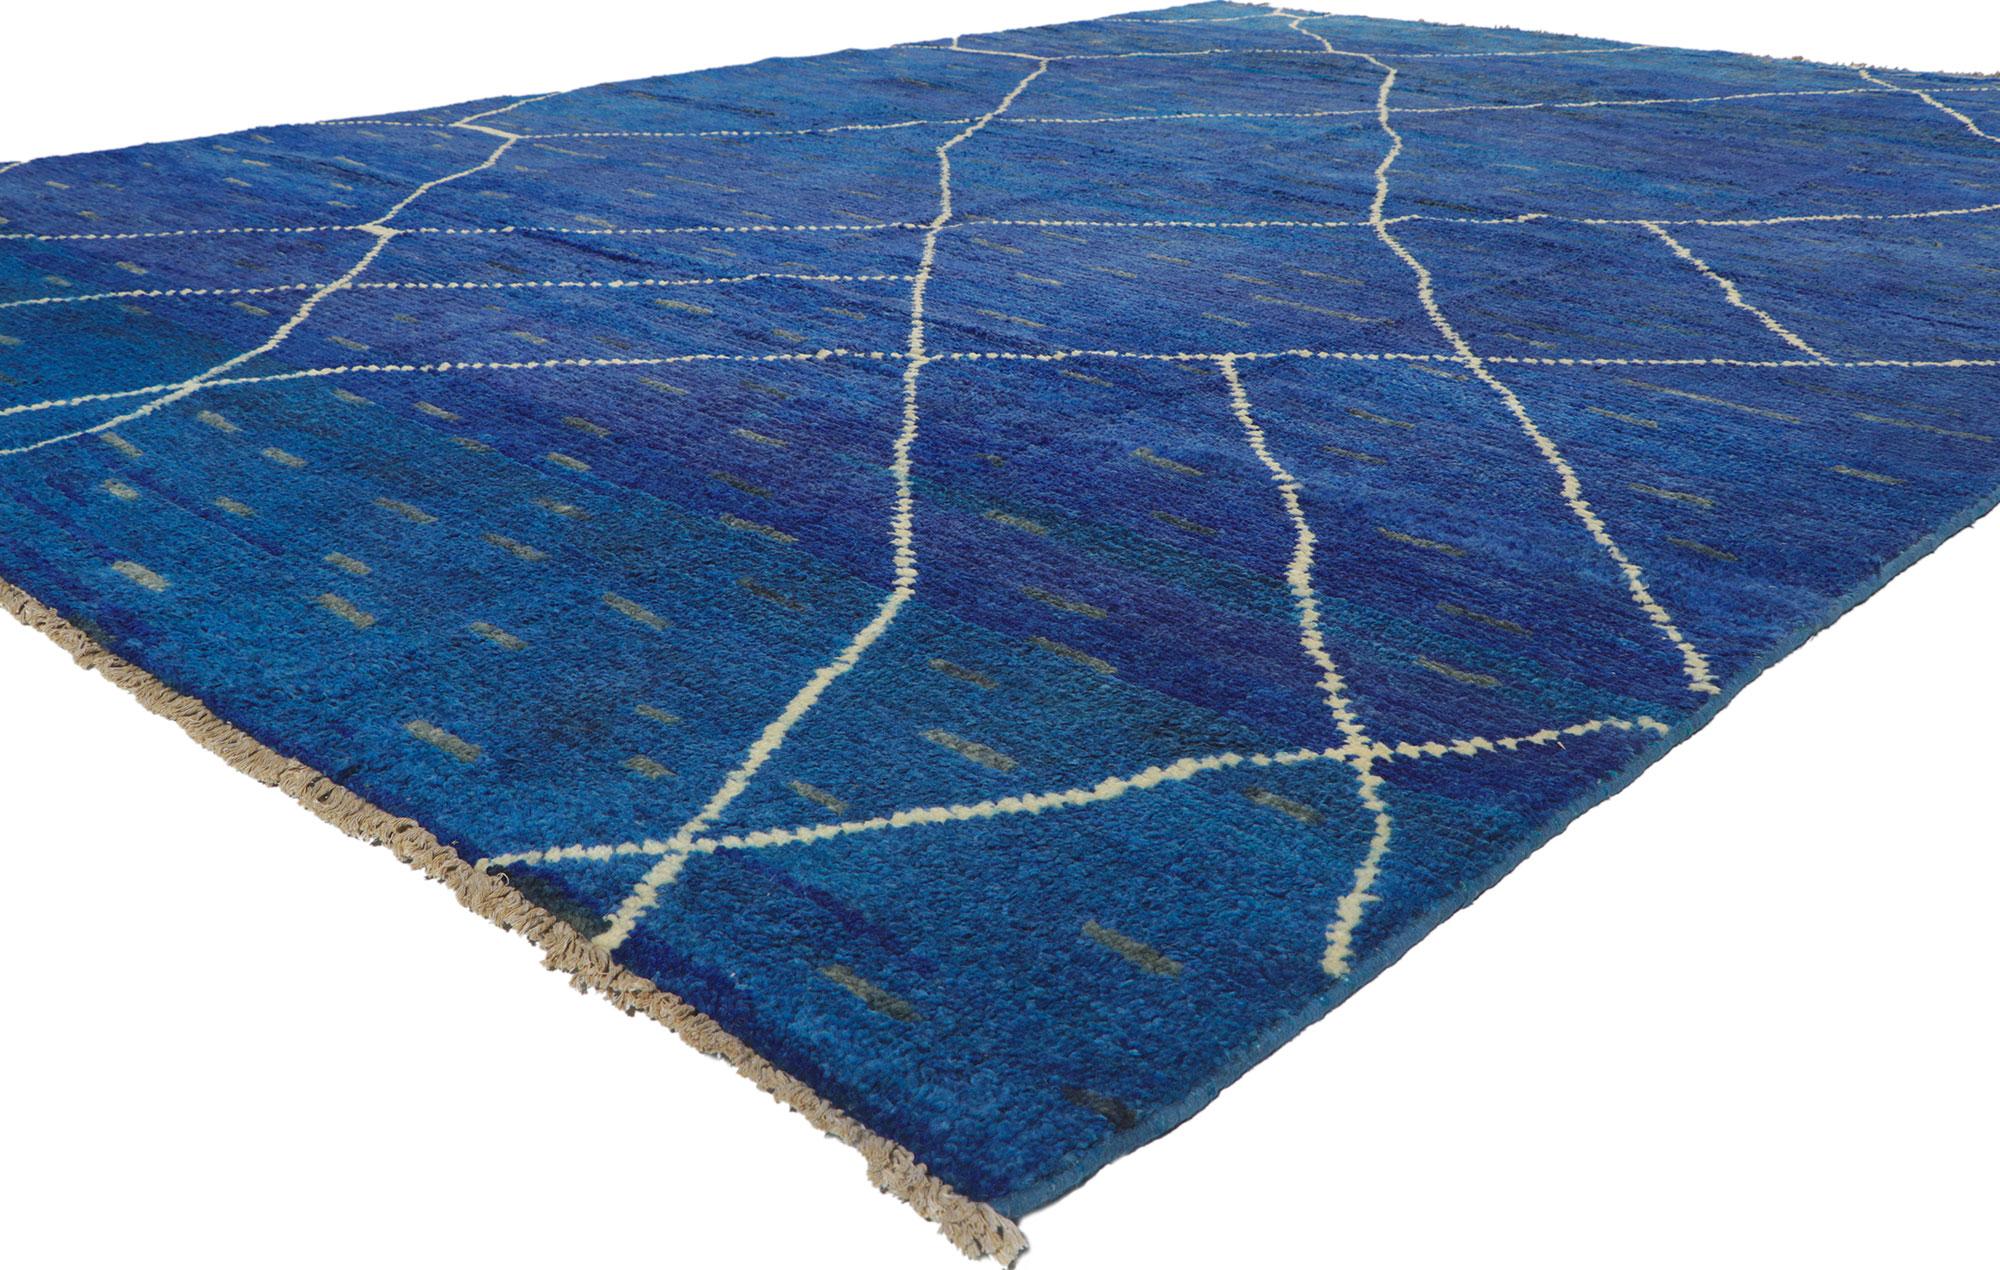 80703 Neu Zeitgenössischer blauer marokkanischer Trellis-Teppich 09'05 x 12'11. Dieser handgeknüpfte Wollteppich im modernen marokkanischen Stil besticht durch seine Schlichtheit, seinen weichen Flor und seine Mid-Century Modernität. Das abgewetzte